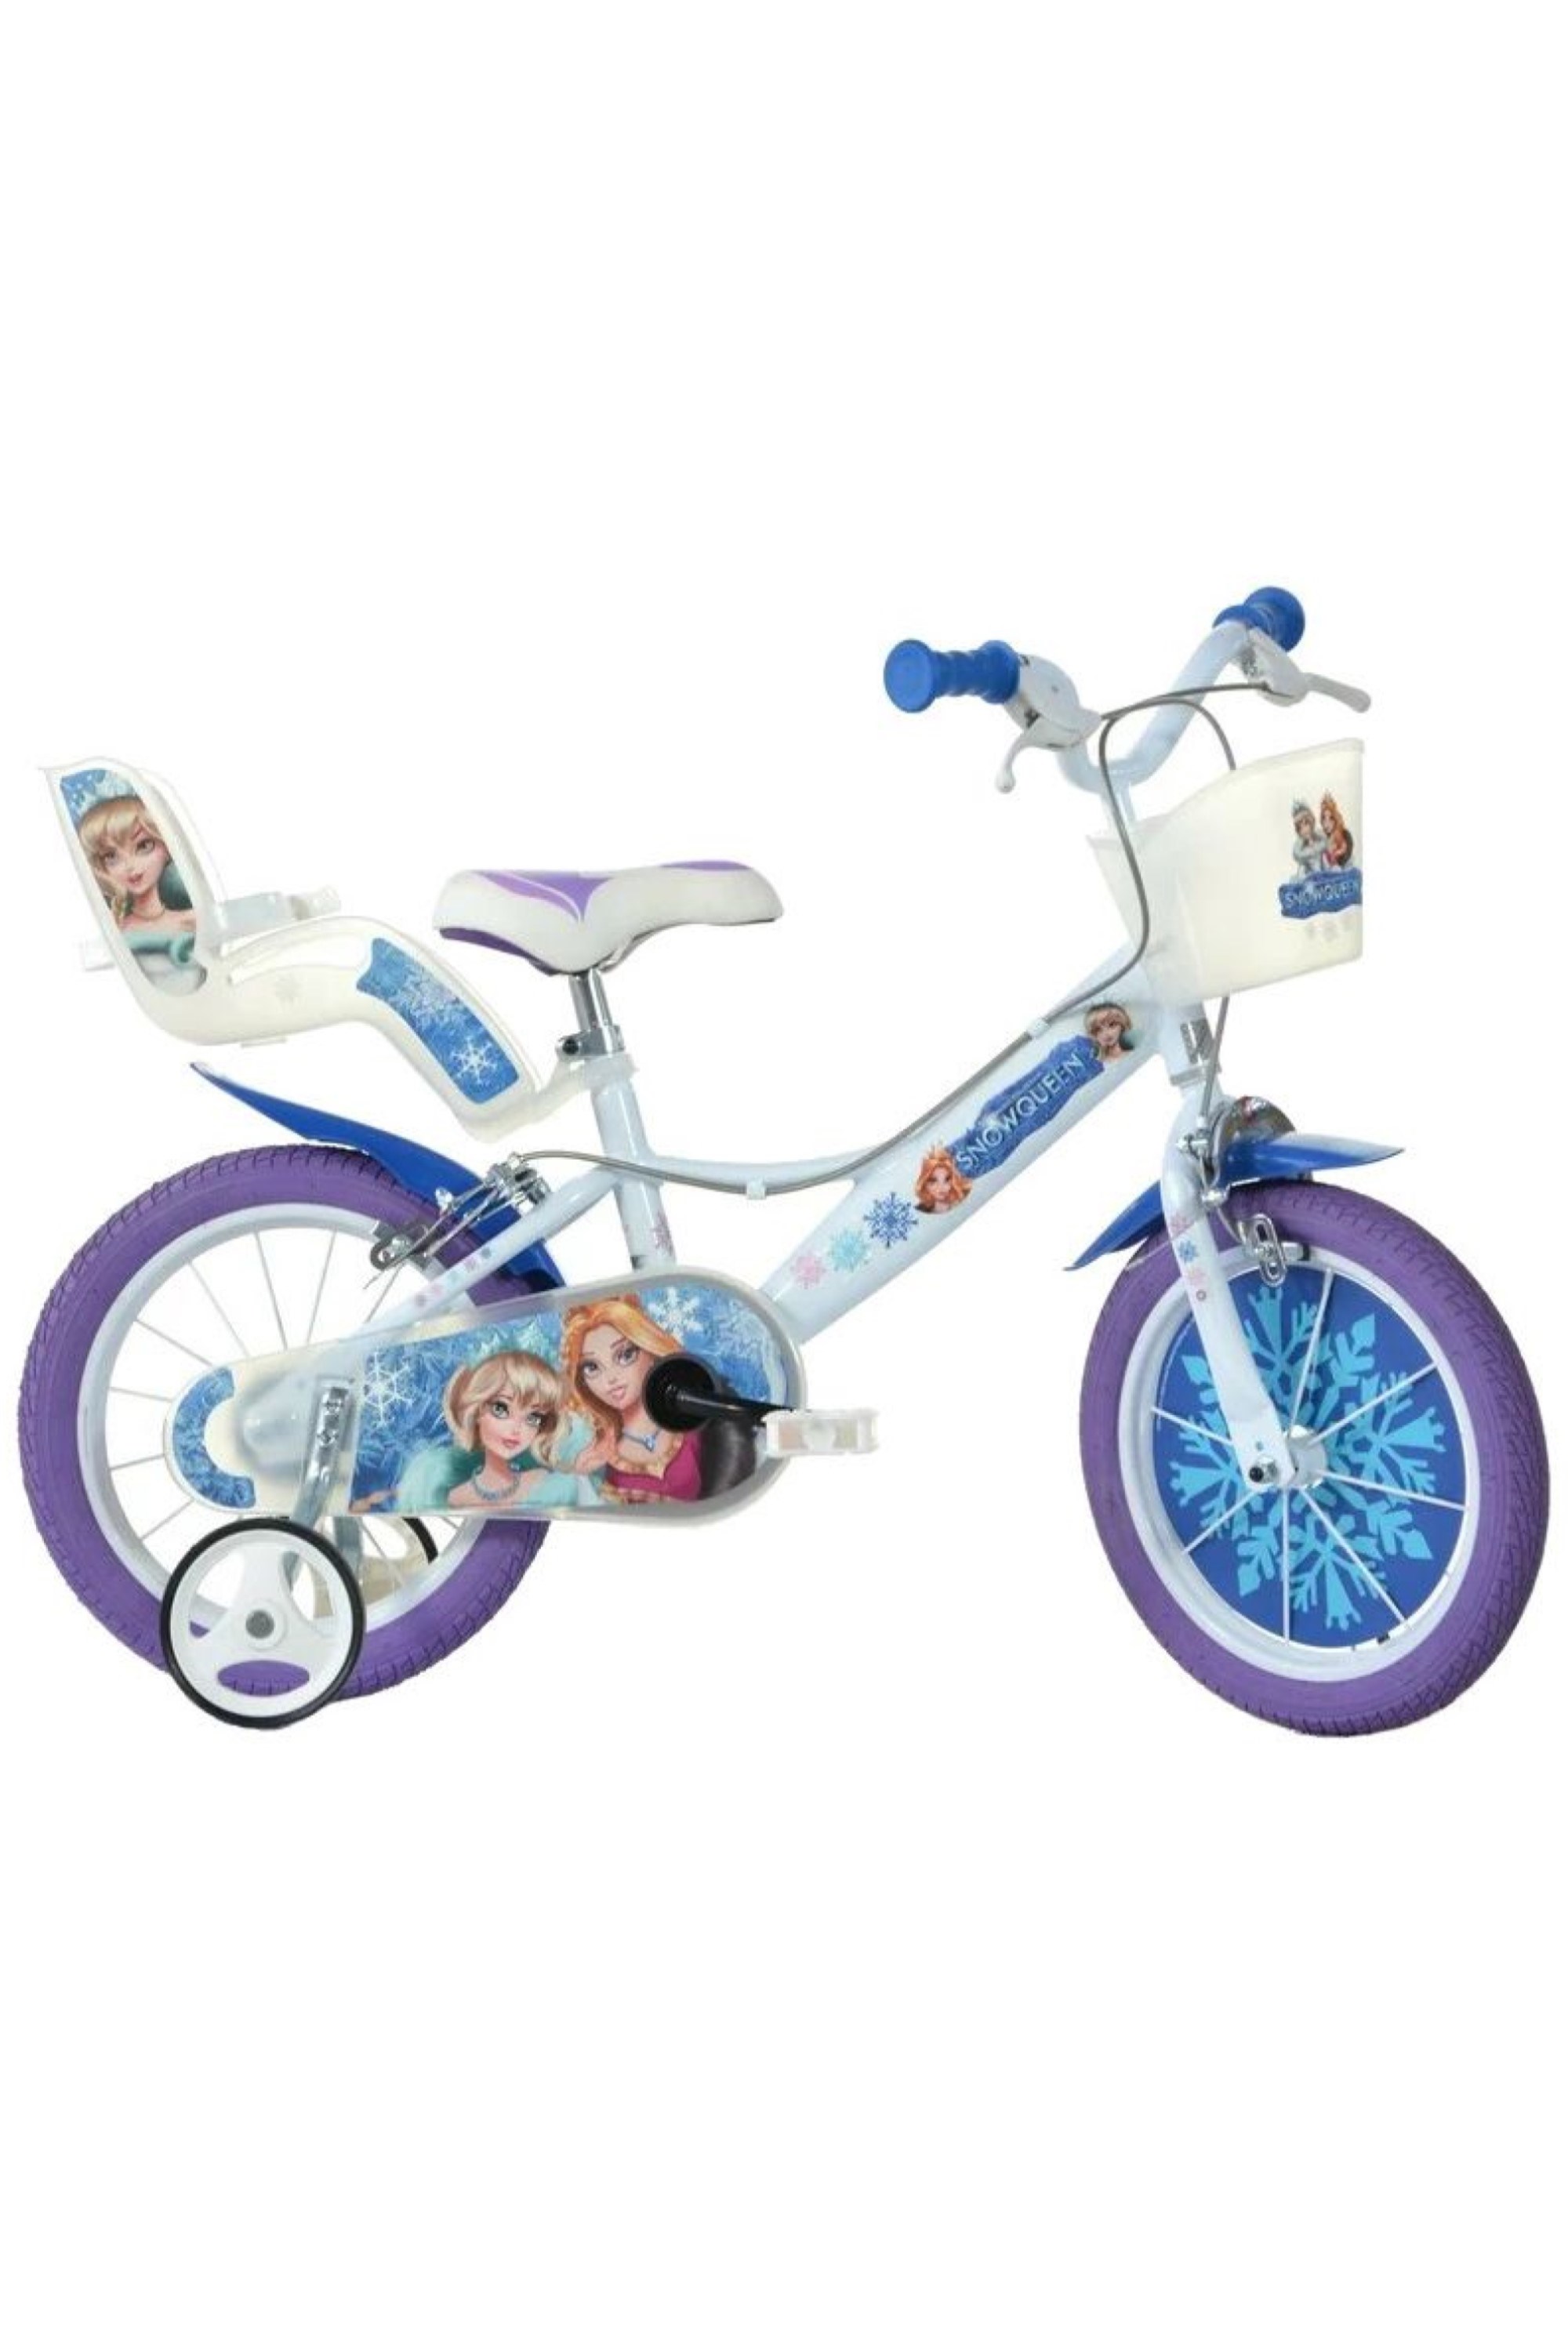 Snow Queen 16" Kids Bike -